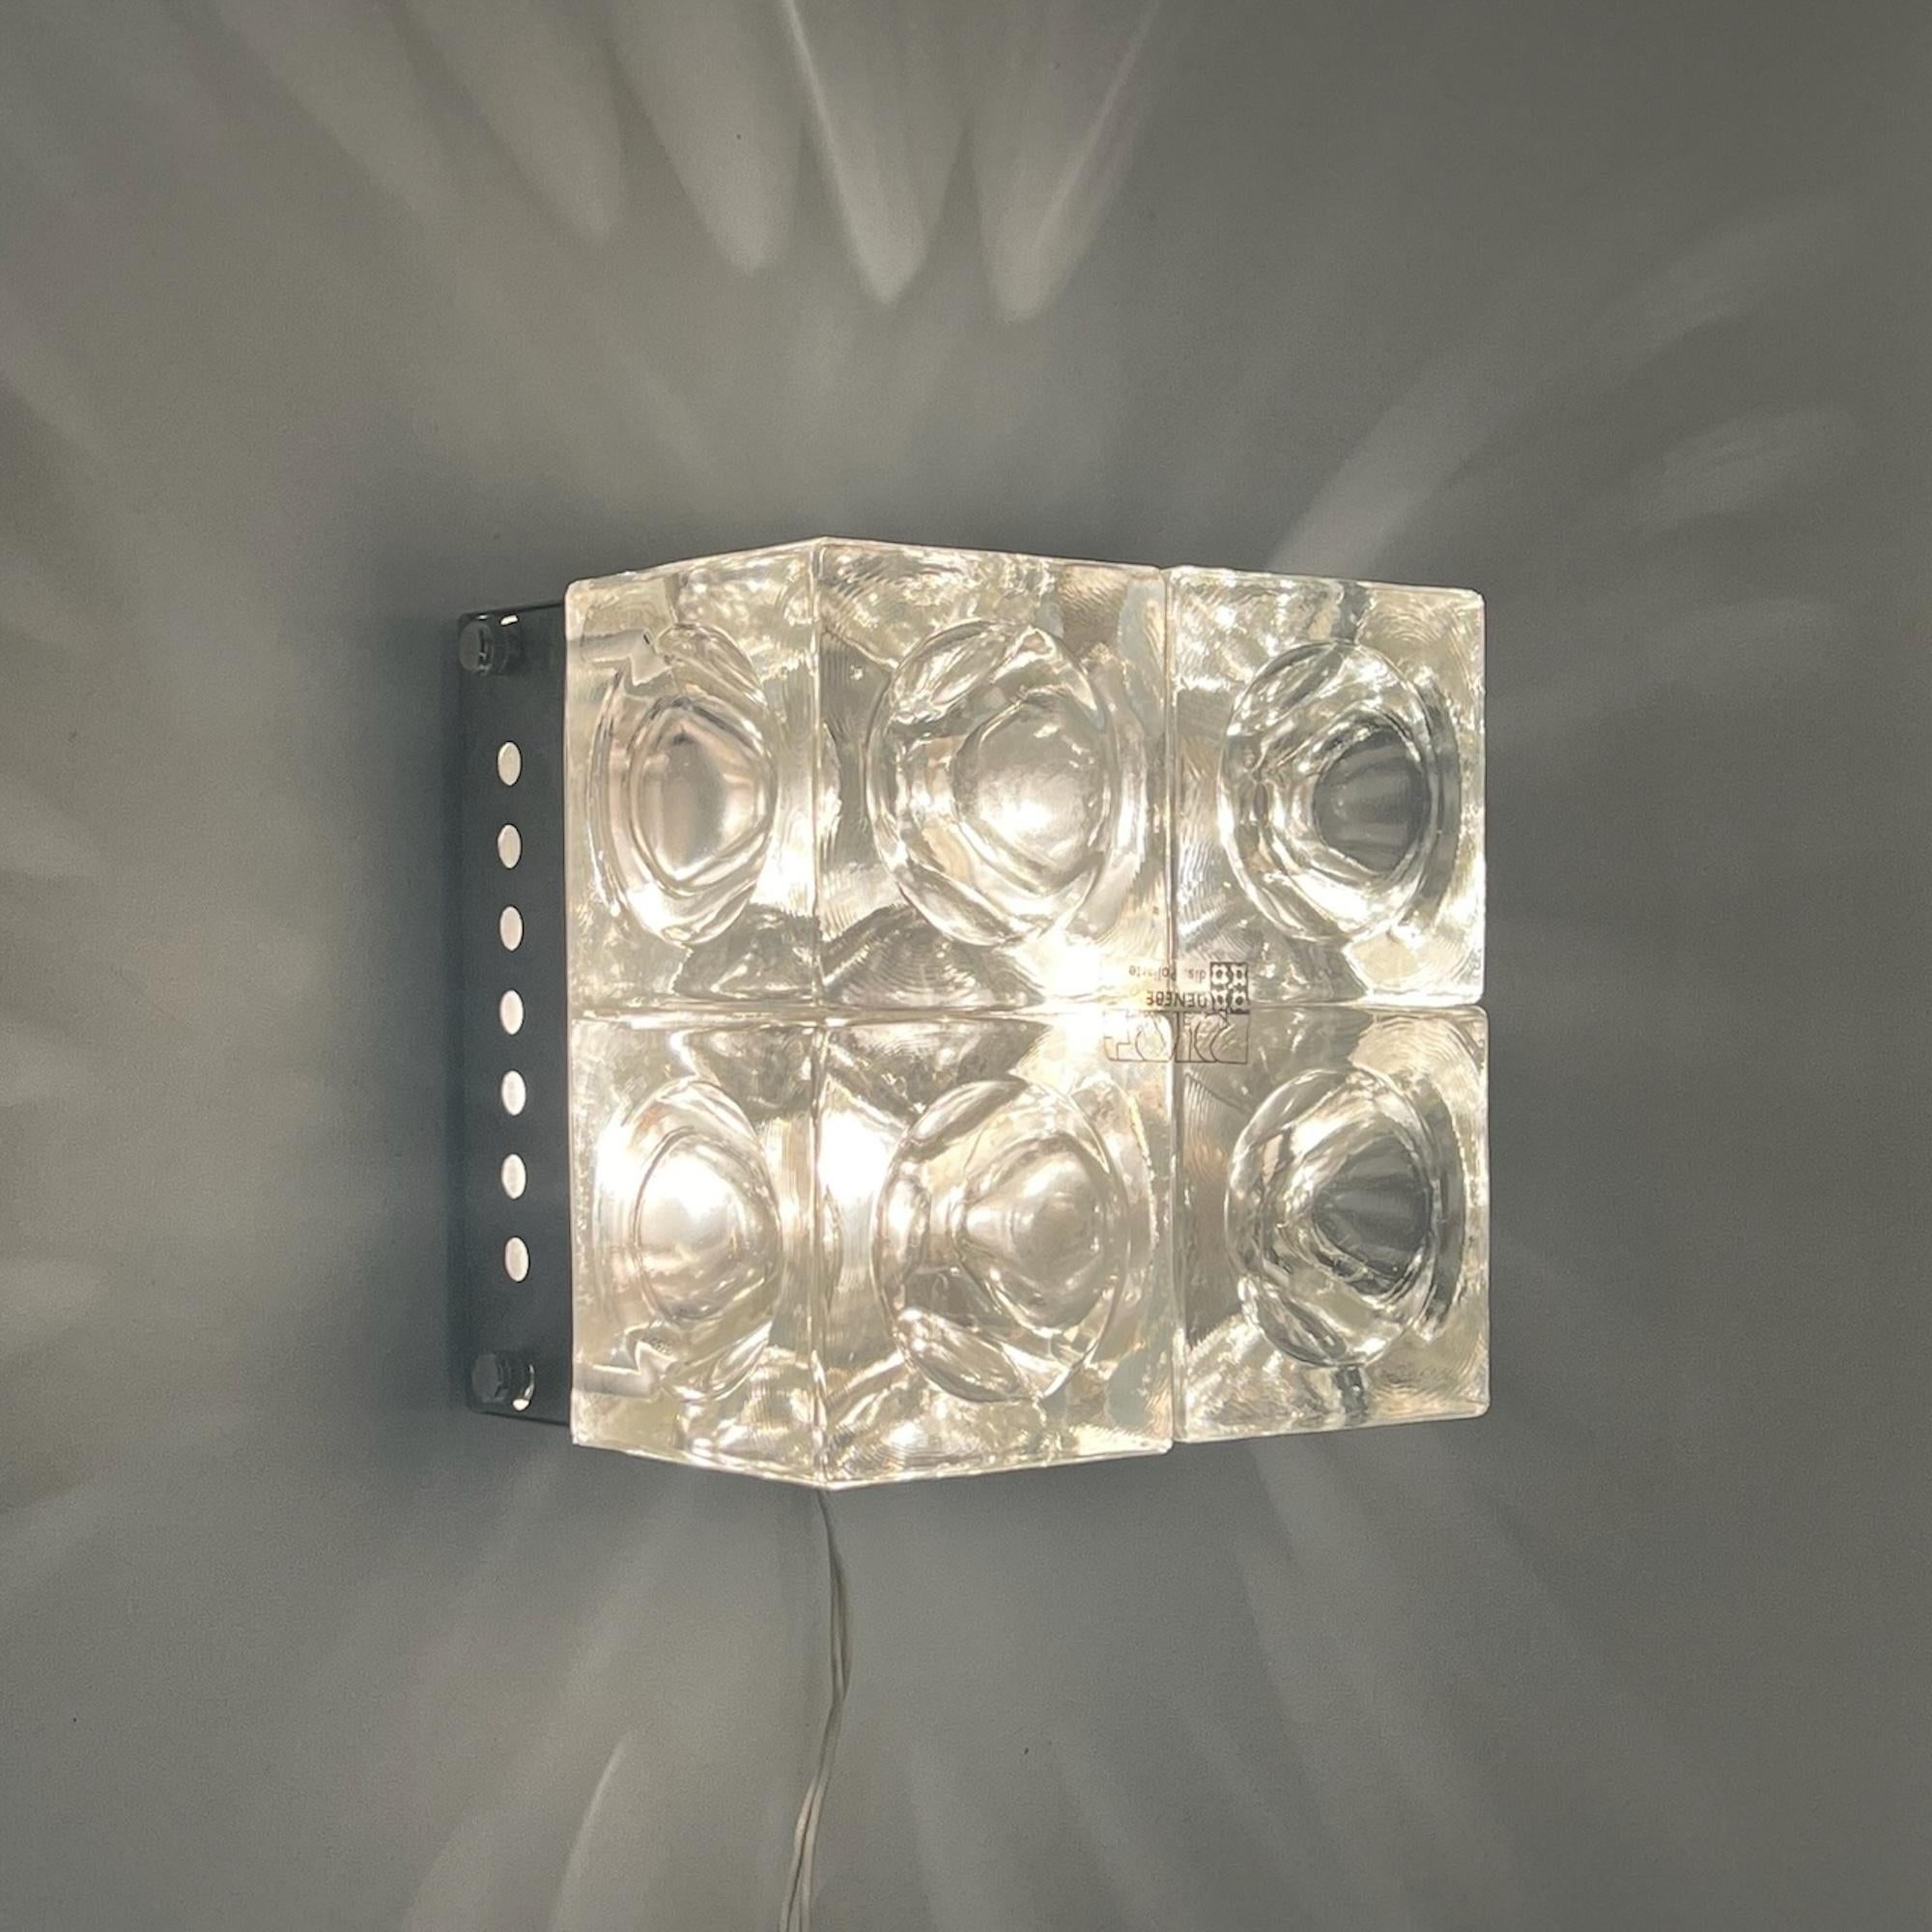 Découvrez la quintessence du design des années 1970 avec l'emblématique et rare lampe Poliarte, méticuleusement fabriquée par le maître Albano Poli. Ce chef-d'œuvre présente quatre cubes concaves en verre à bulles, sertis dans une base en métal avec